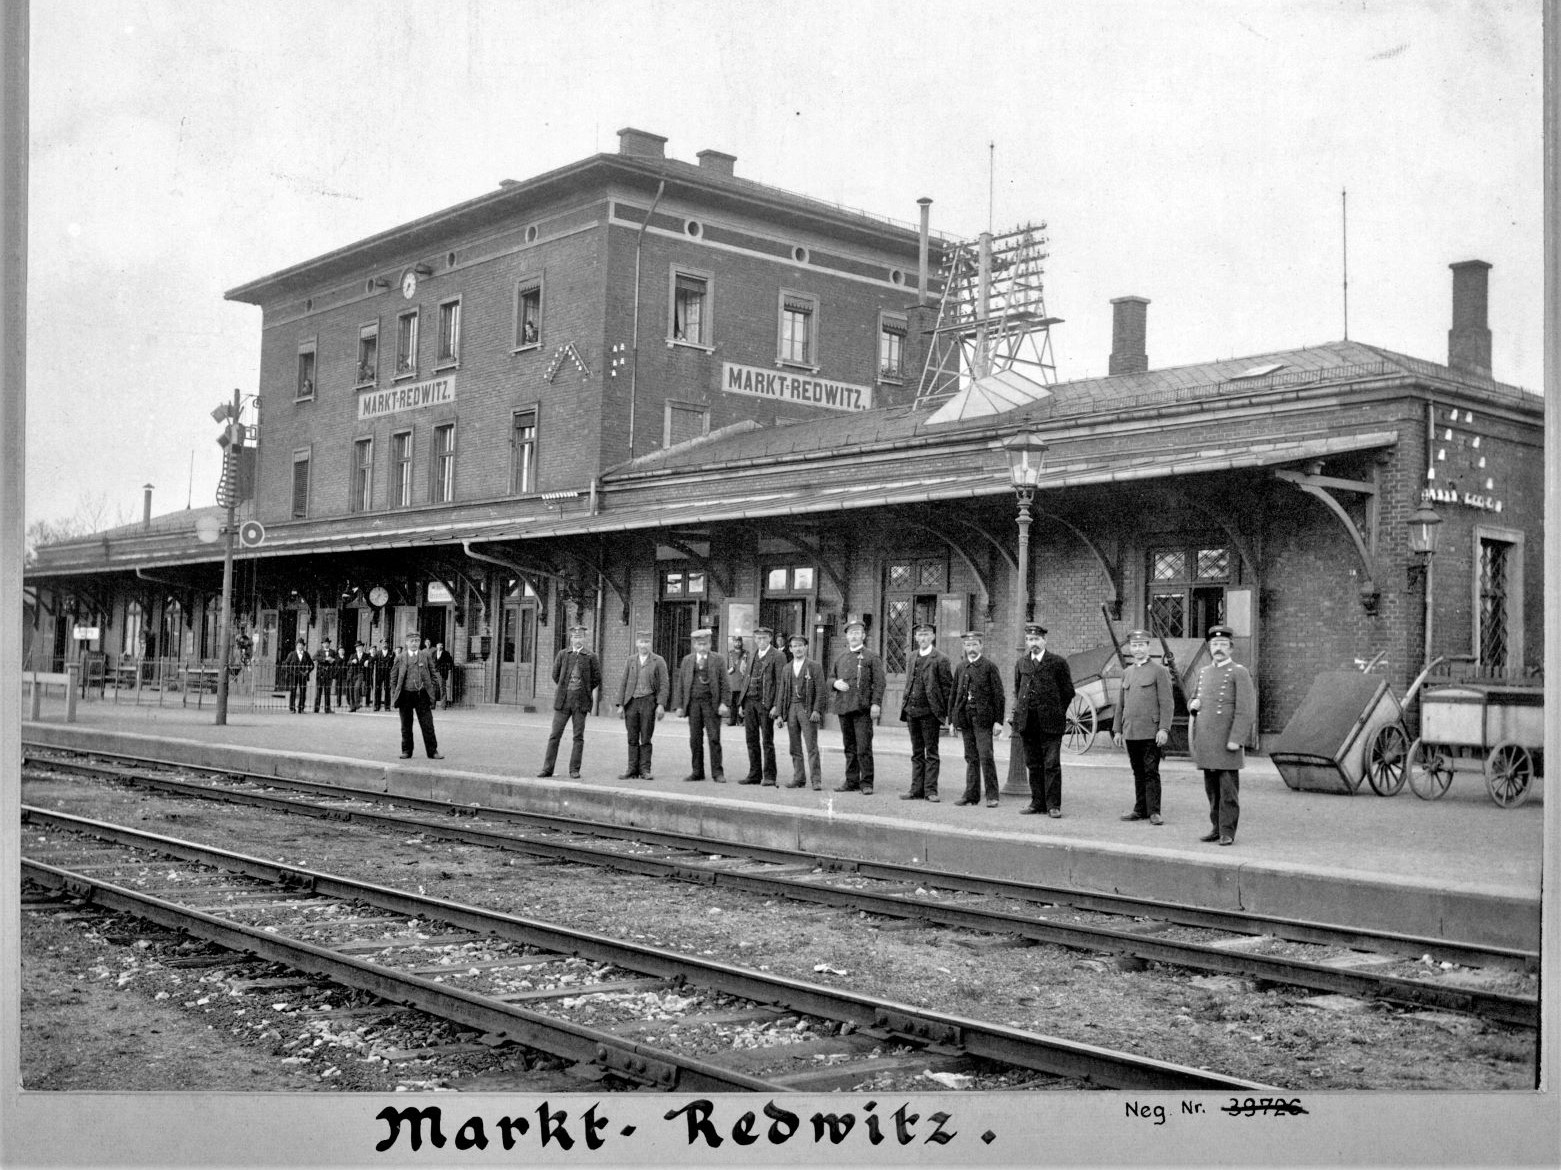 Damals hieß es noch "Markt Redwitz". 1907 wurde es dann "Marktredwitz". (Foto: DB Museum)